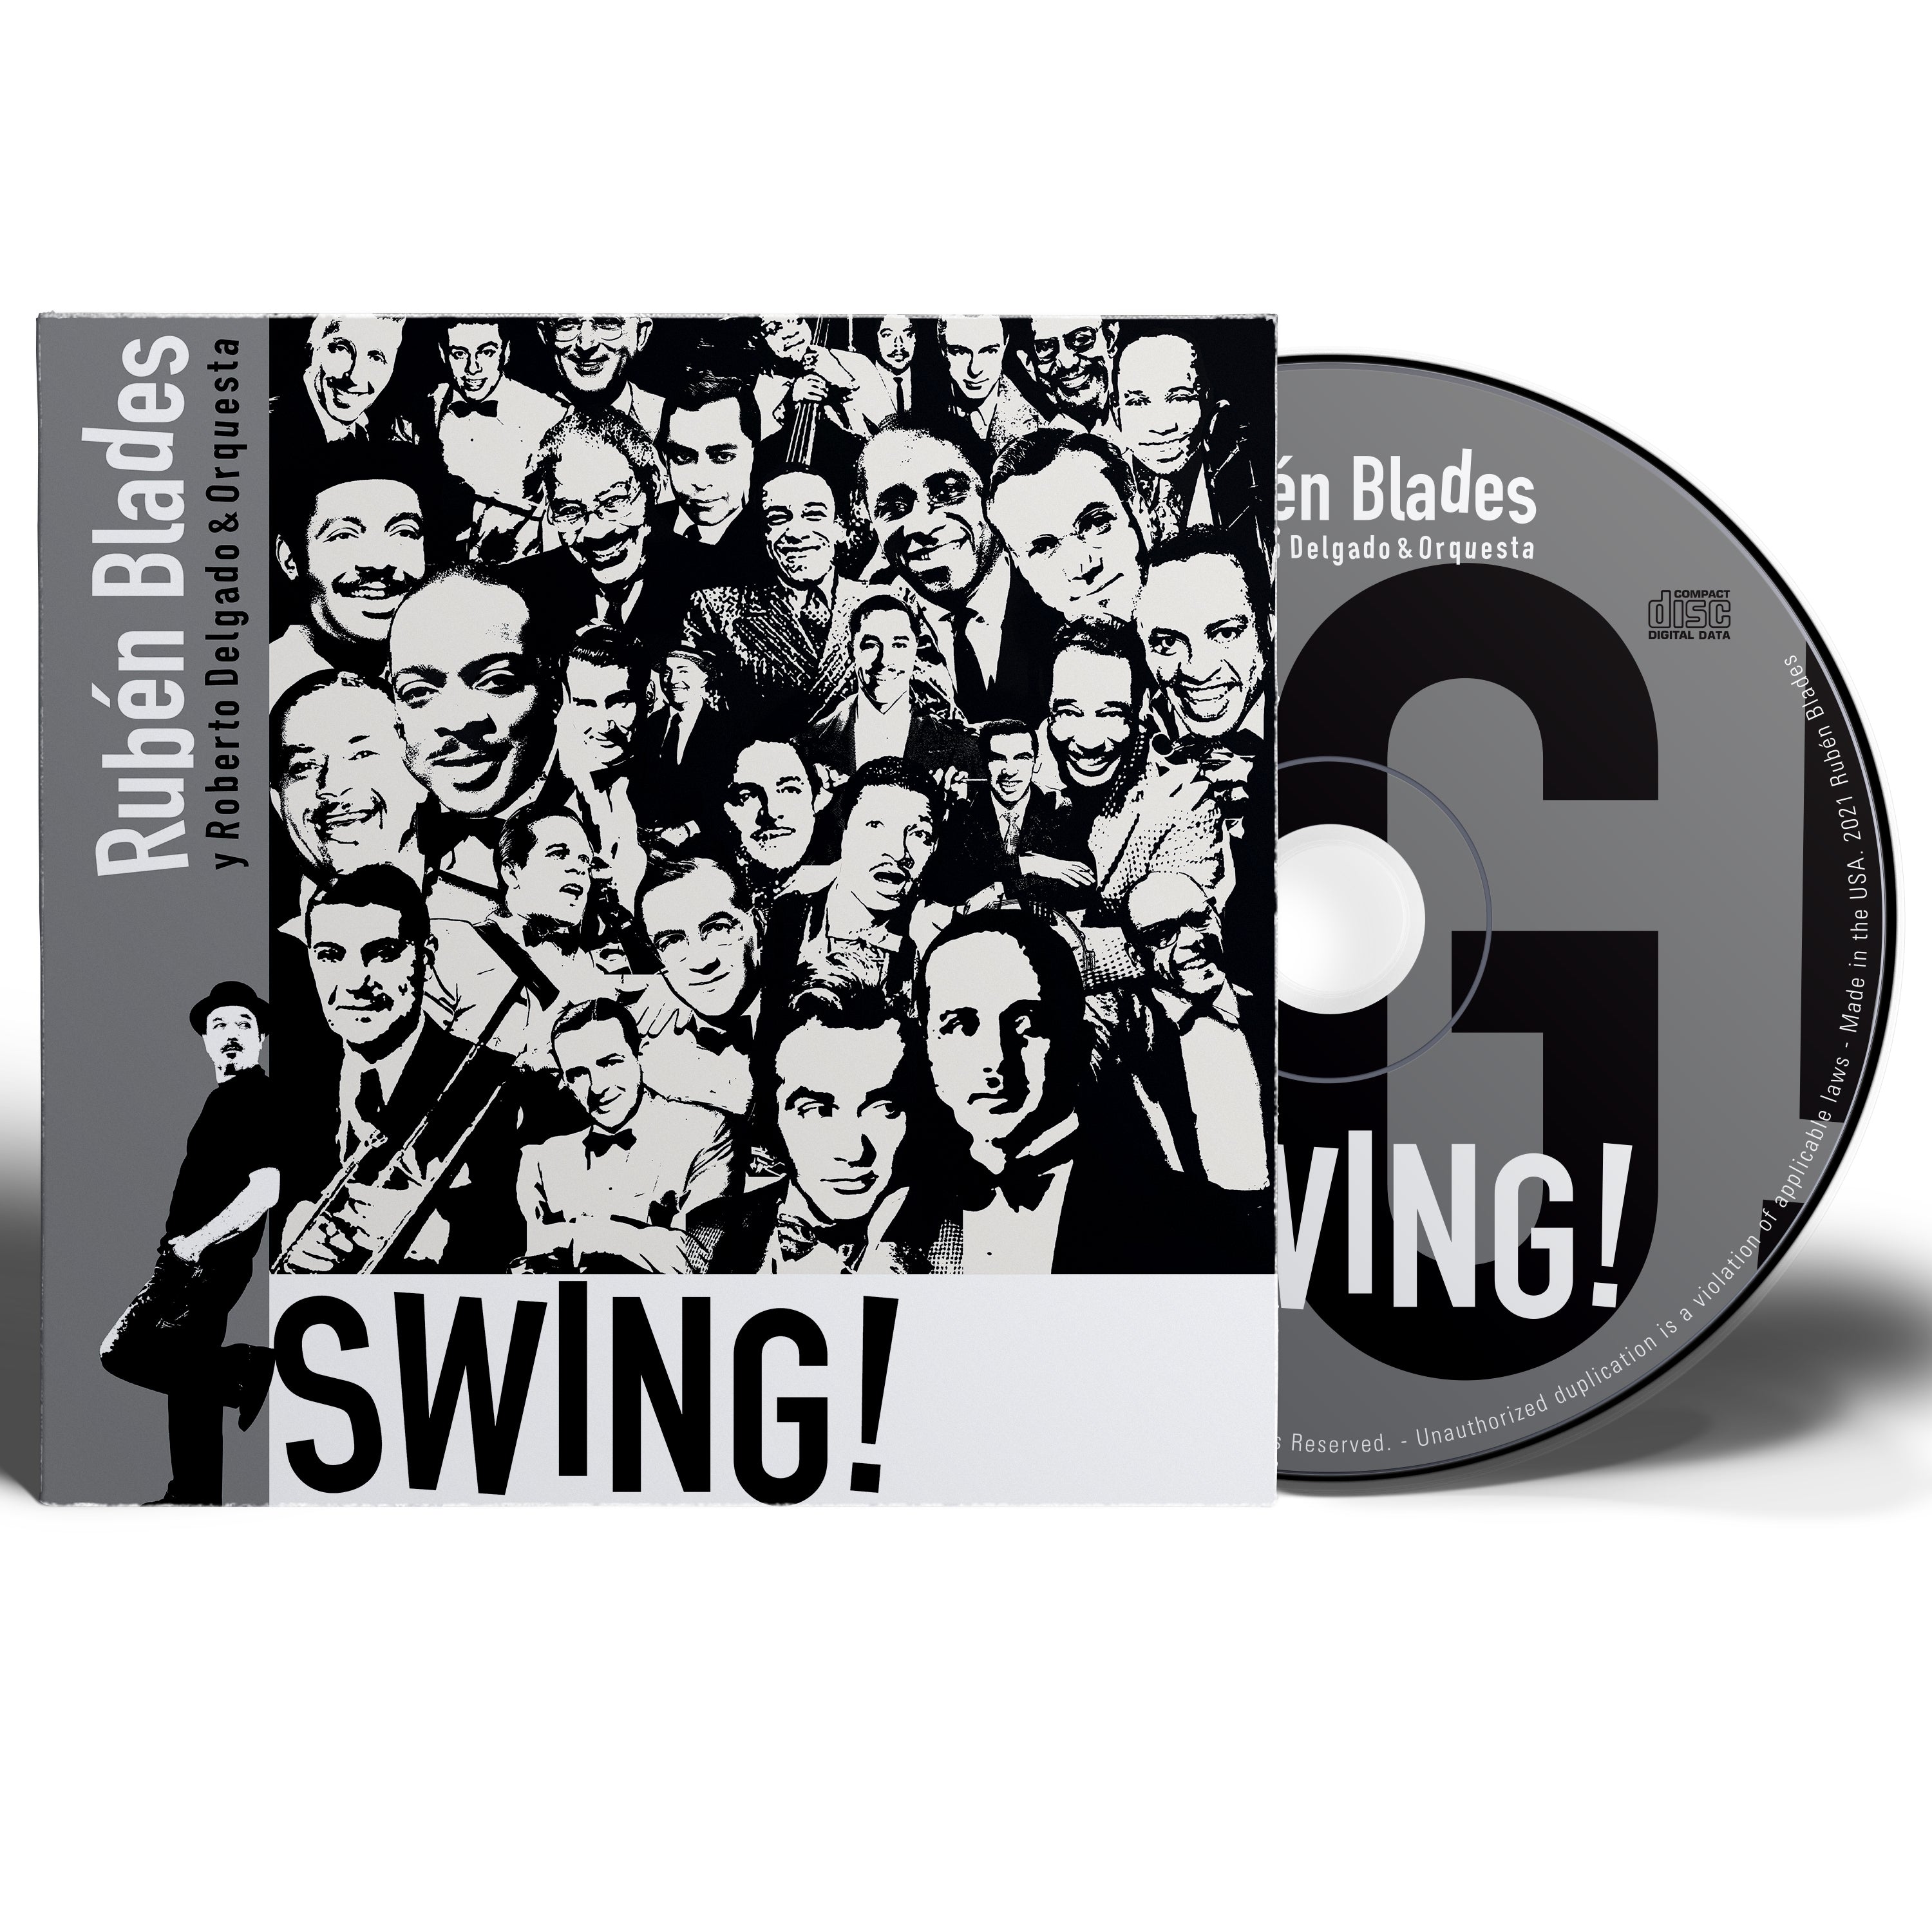 Rubén Blades con Roberto Delgado y Orquesta - "SWING!"